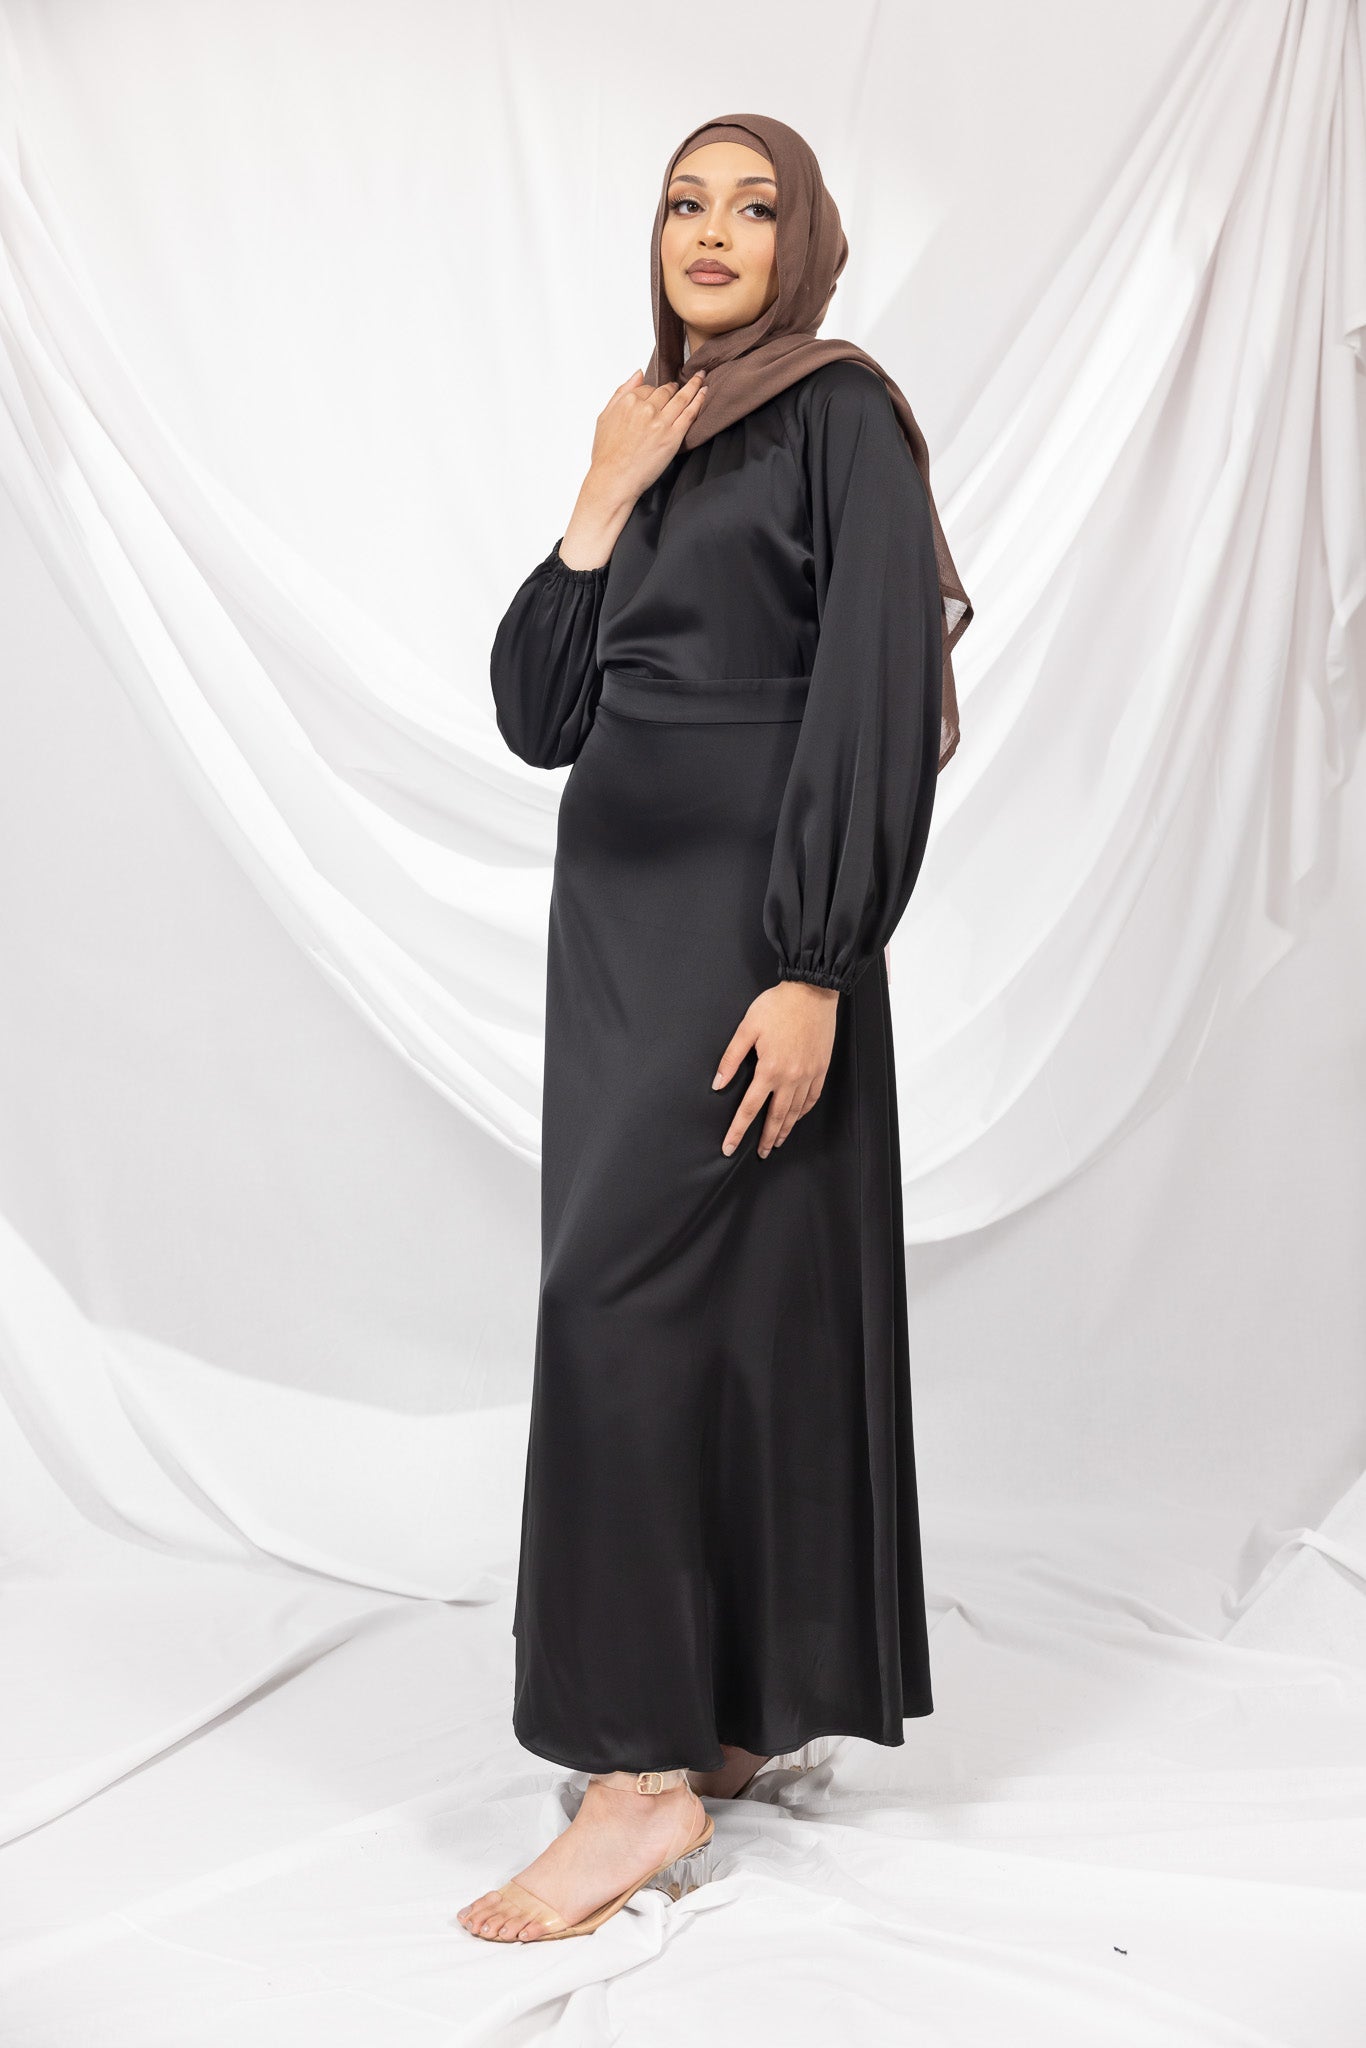 m8025Black-dress-abaya